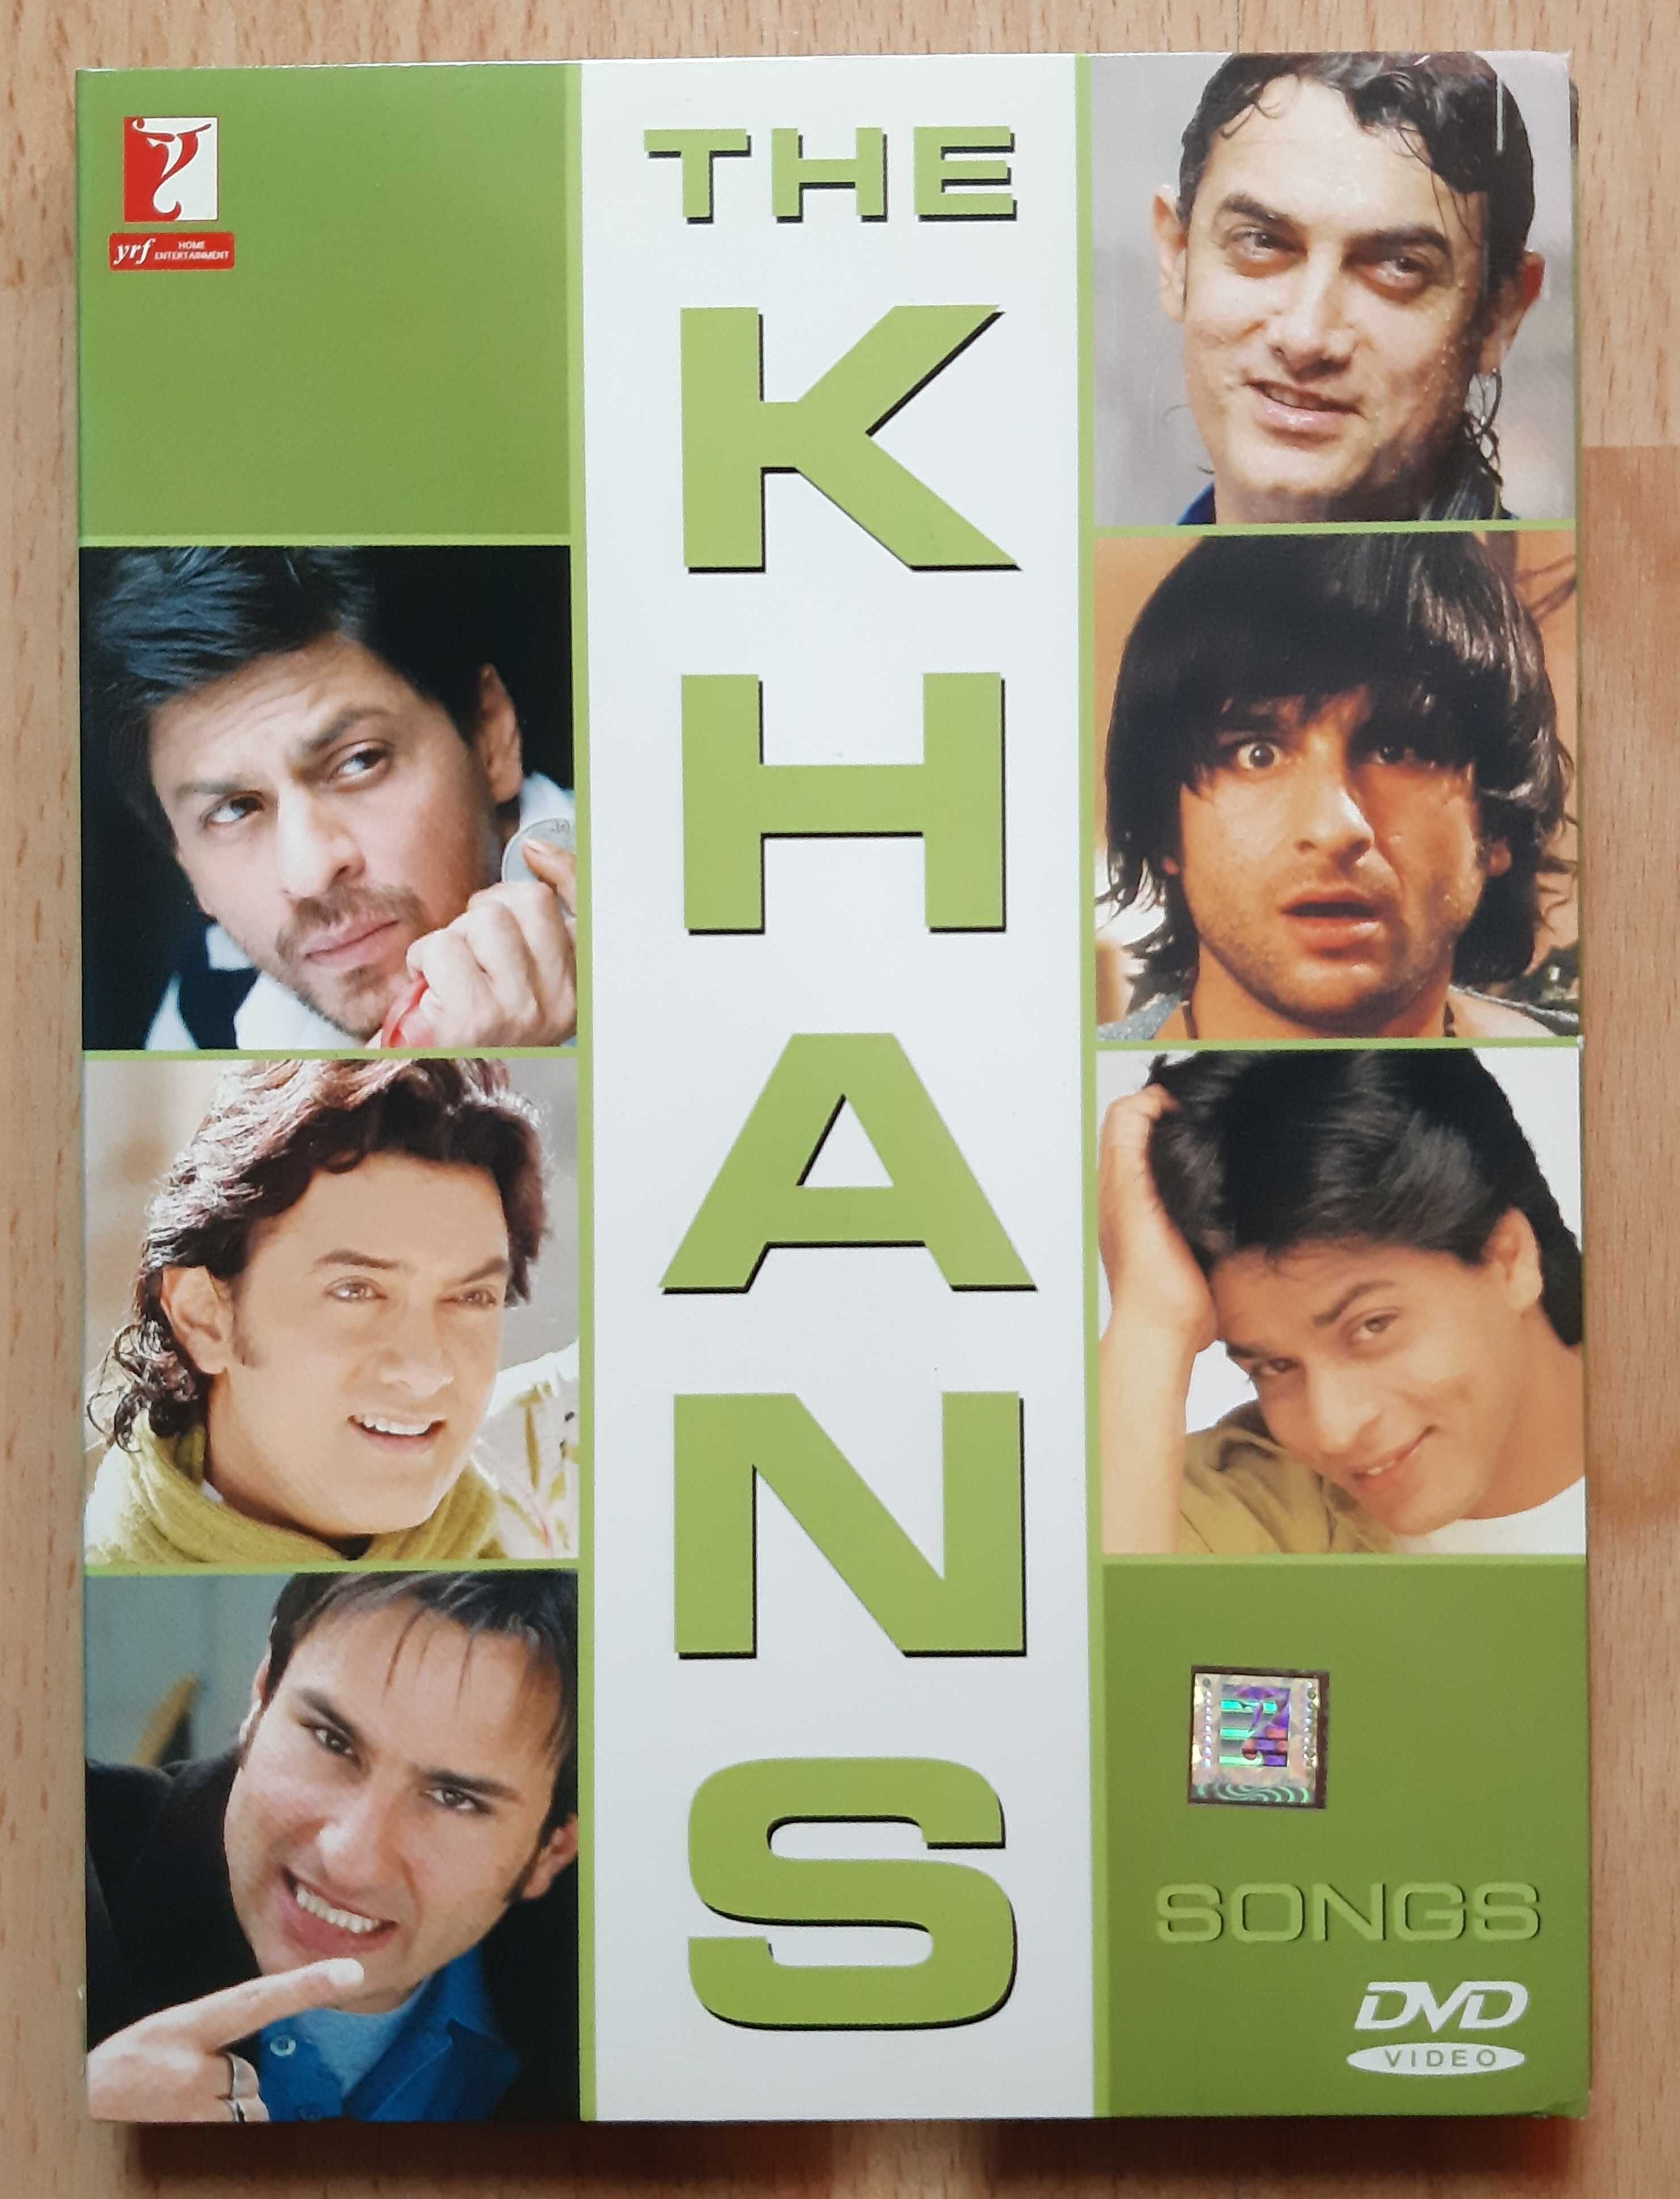 Discuri DVD, originale filme muzica indiana (hindi subtitrare engleza)